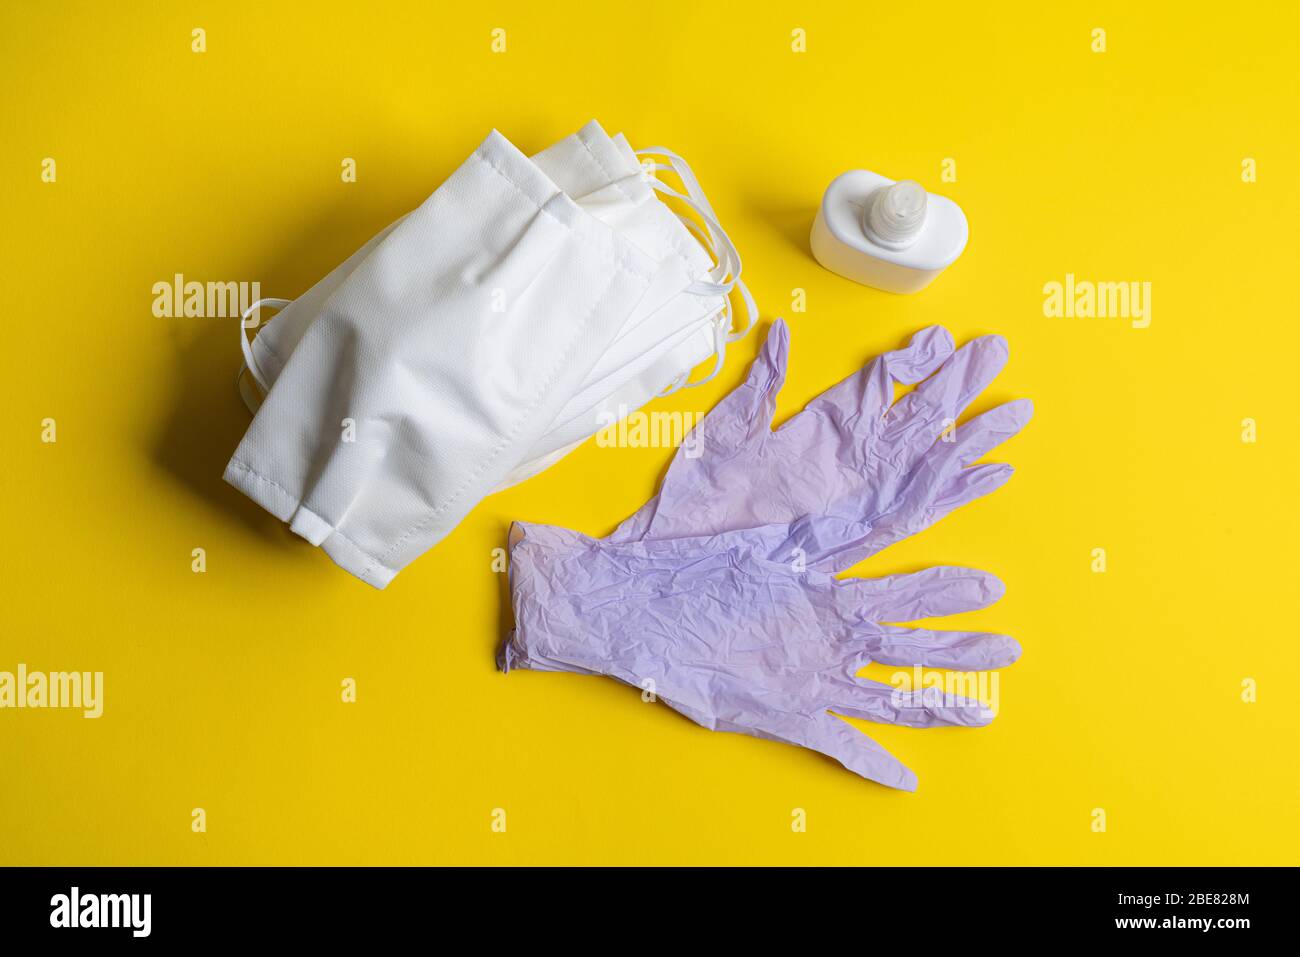 masques de protection, désinfectants et gants jetables en latex sur une surface colorée Banque D'Images